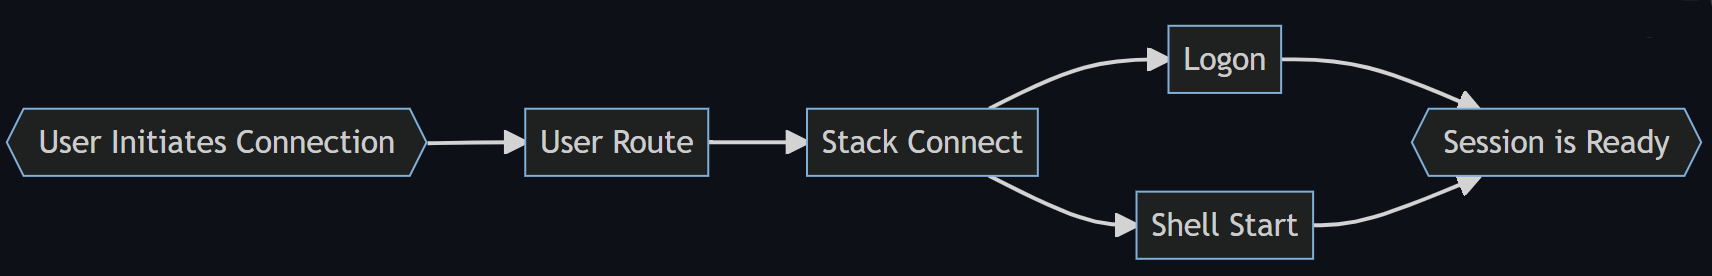 Schemat blokowy przedstawiający cztery etapy procesu logowania: Trasa użytkownika, Stos Połączenie ed, Logon i Shell Start to Shell Ready (Gotowe do powłoki).